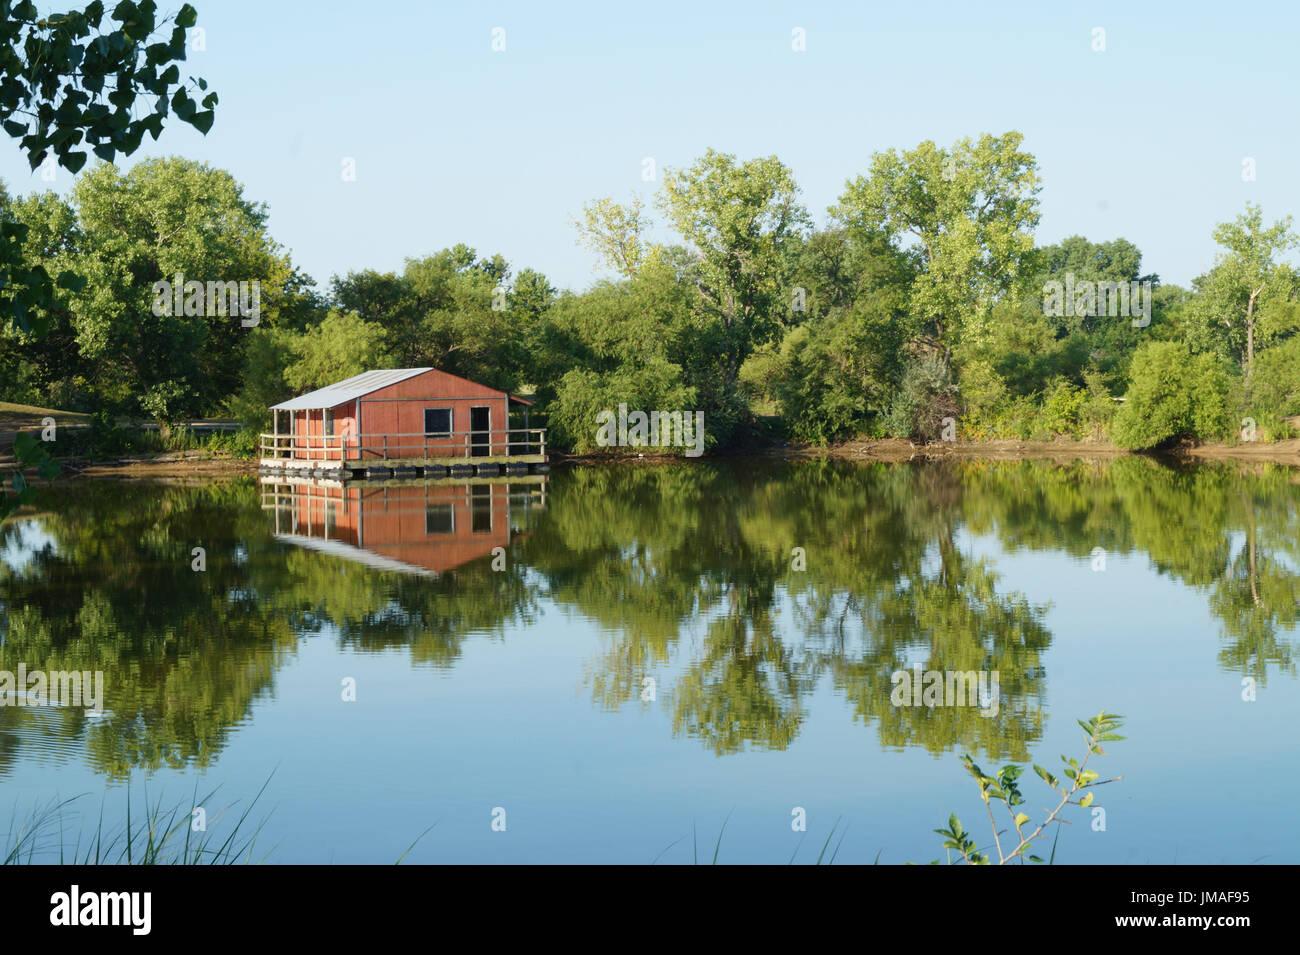 A red fishing shack on a calm lake Wichita Kansas USA Stock Photo